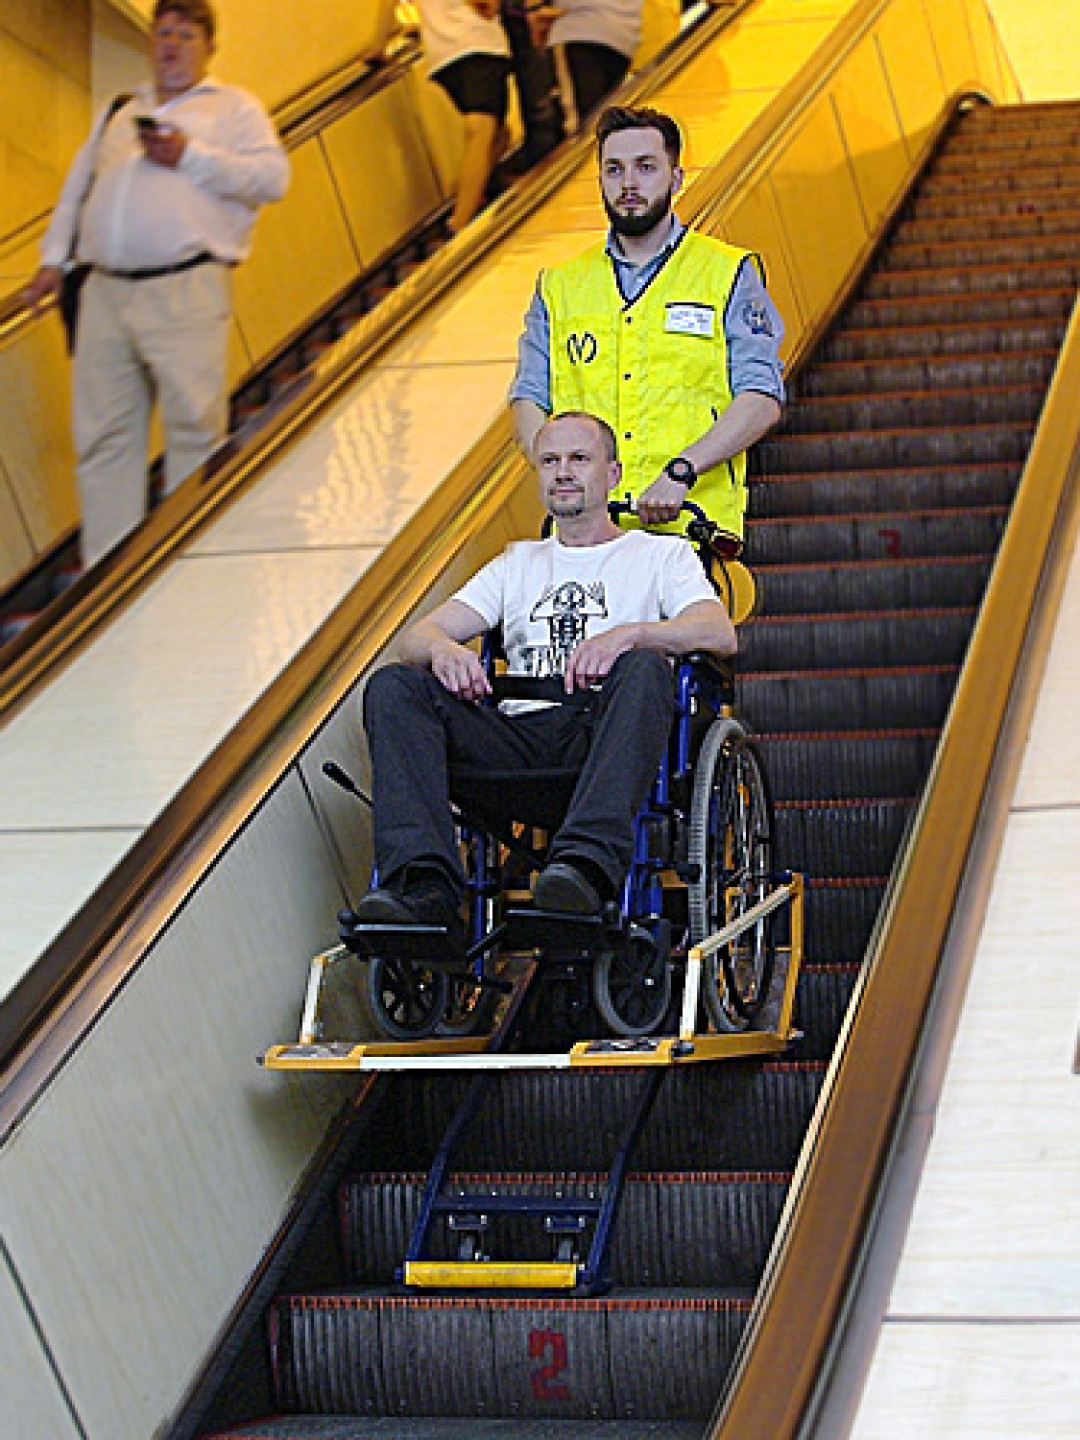 Перевозка пассажиров инвалидов. Эскалатор для инвалидов. Эскалатор в метро для инвалидов-колясочников. Эскалатор для инвалидов колясочников. Эскалатор для инвалидов коляске.